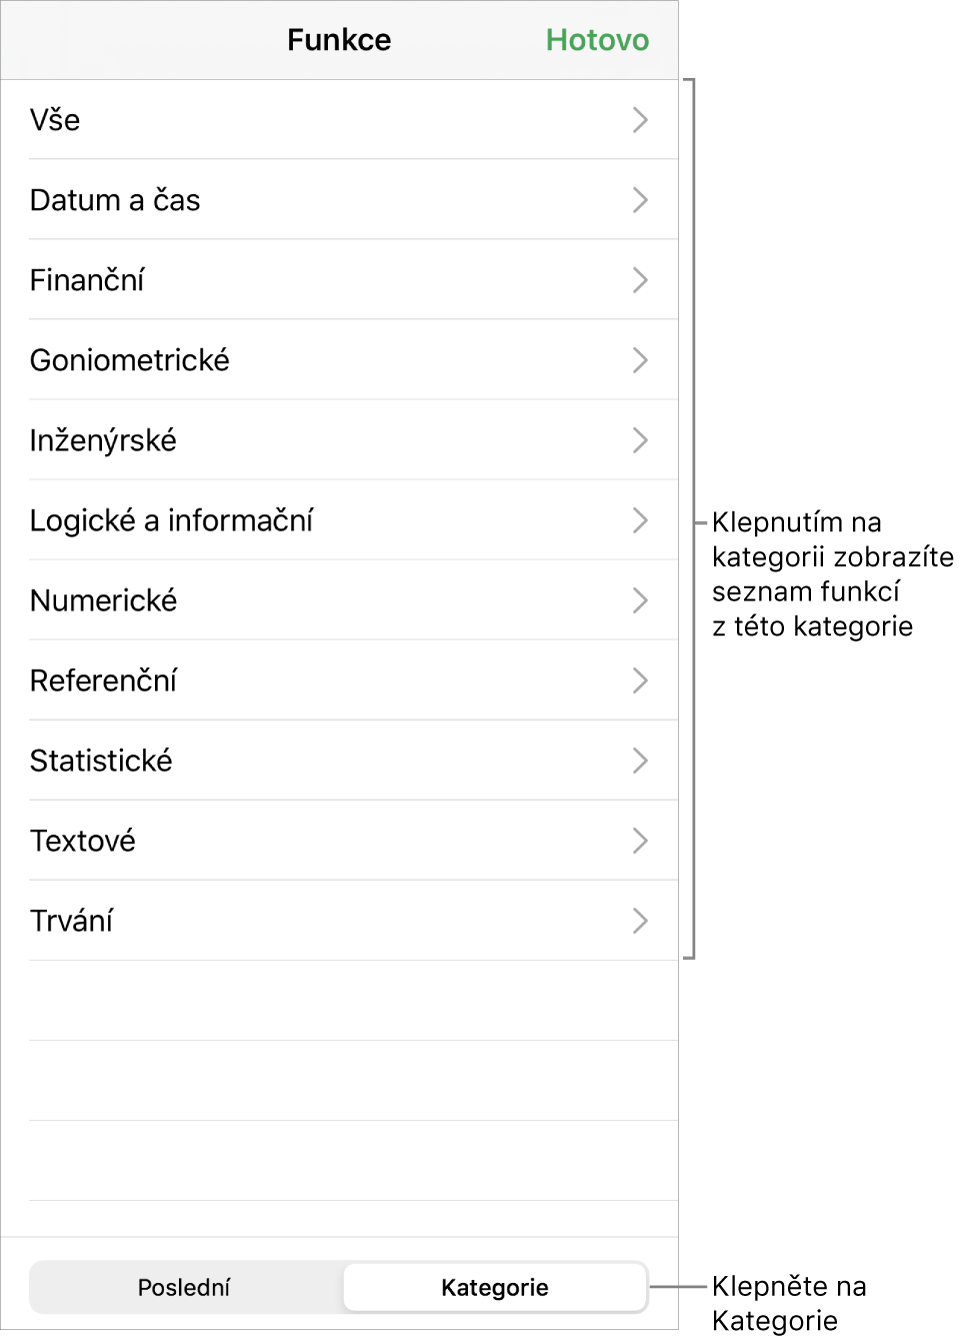 Prohlížeč funkcí s vybraným tlačítkem Kategorie a seznamem kategorií pod ním